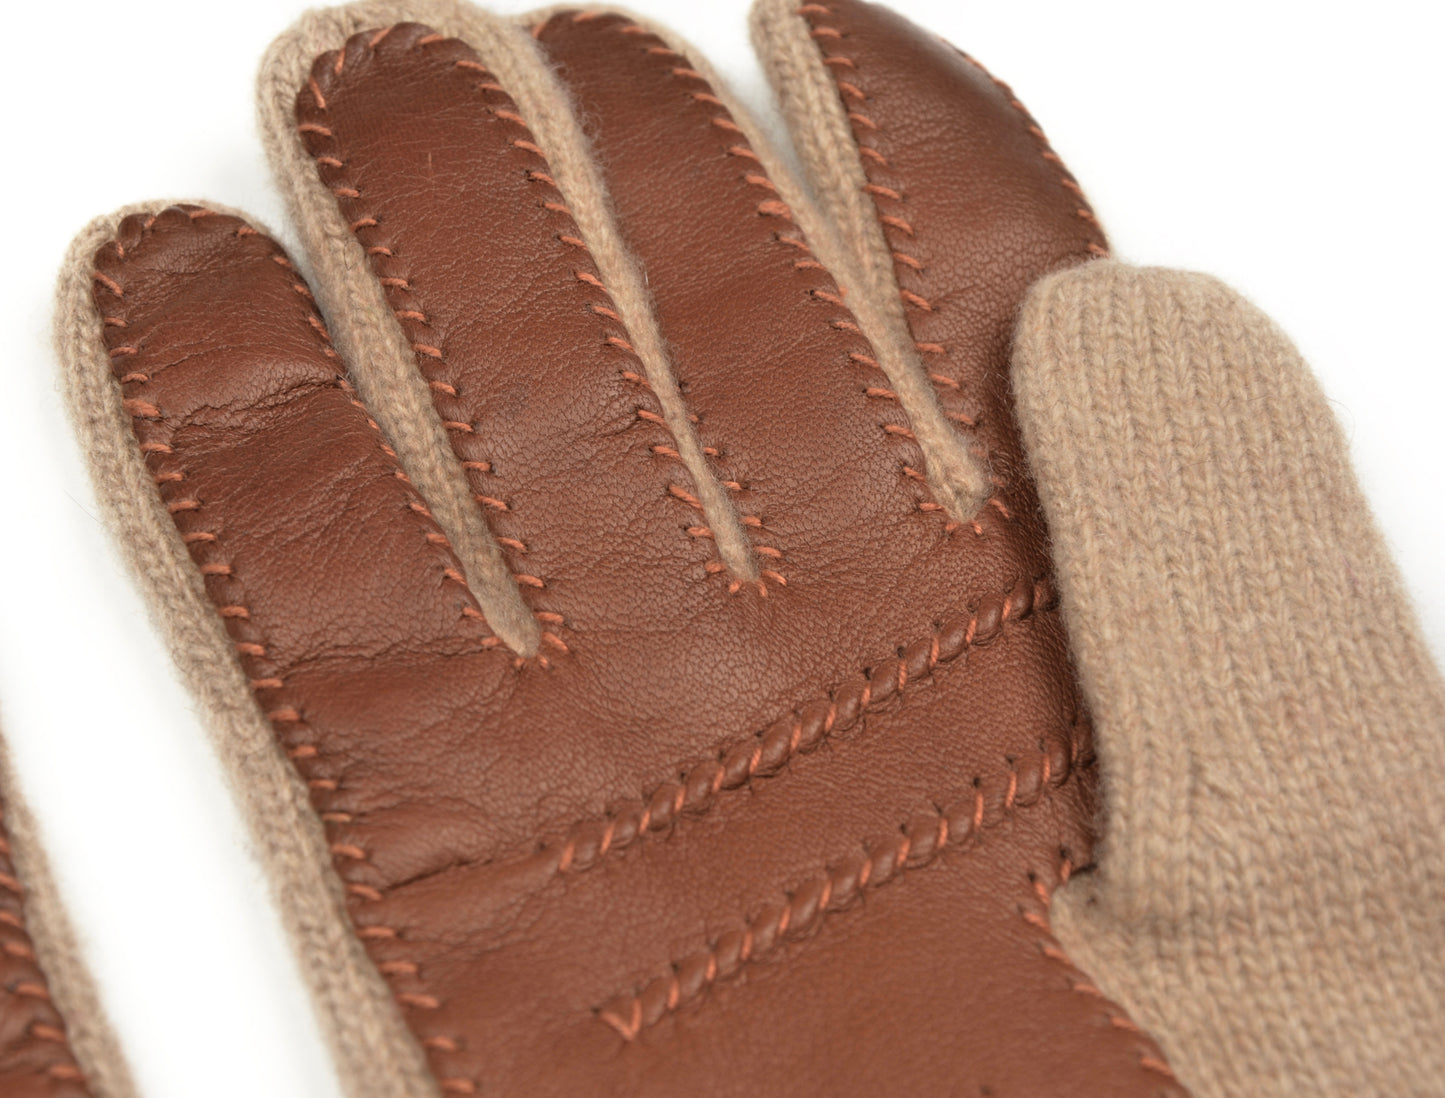 Handschuhe aus Kaschmir &amp; Wolle Größe M - Haferflocken &amp; Braun